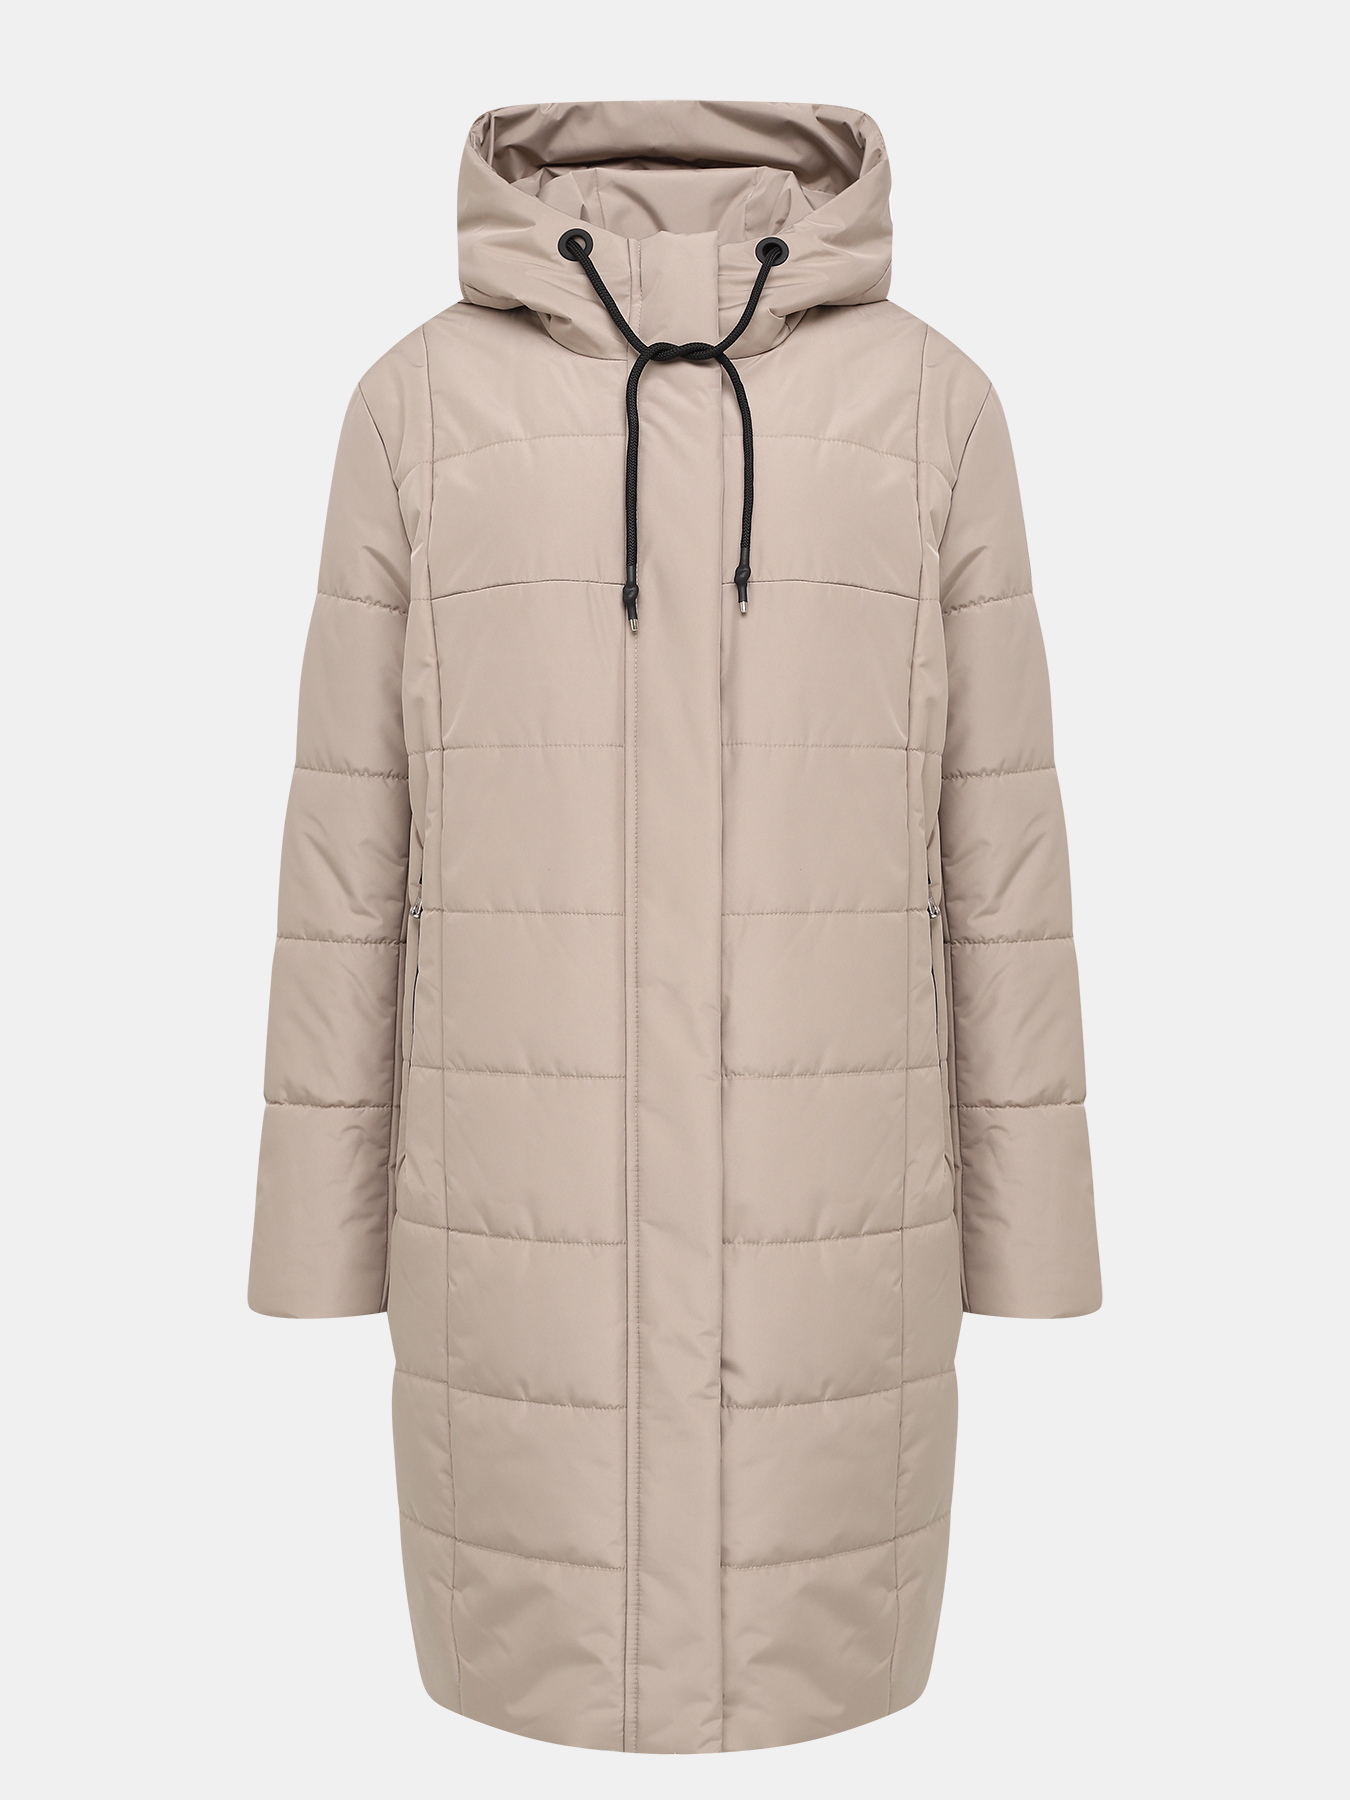 Пальто зимнее Maritta 433536-025, цвет бежевый, размер 48